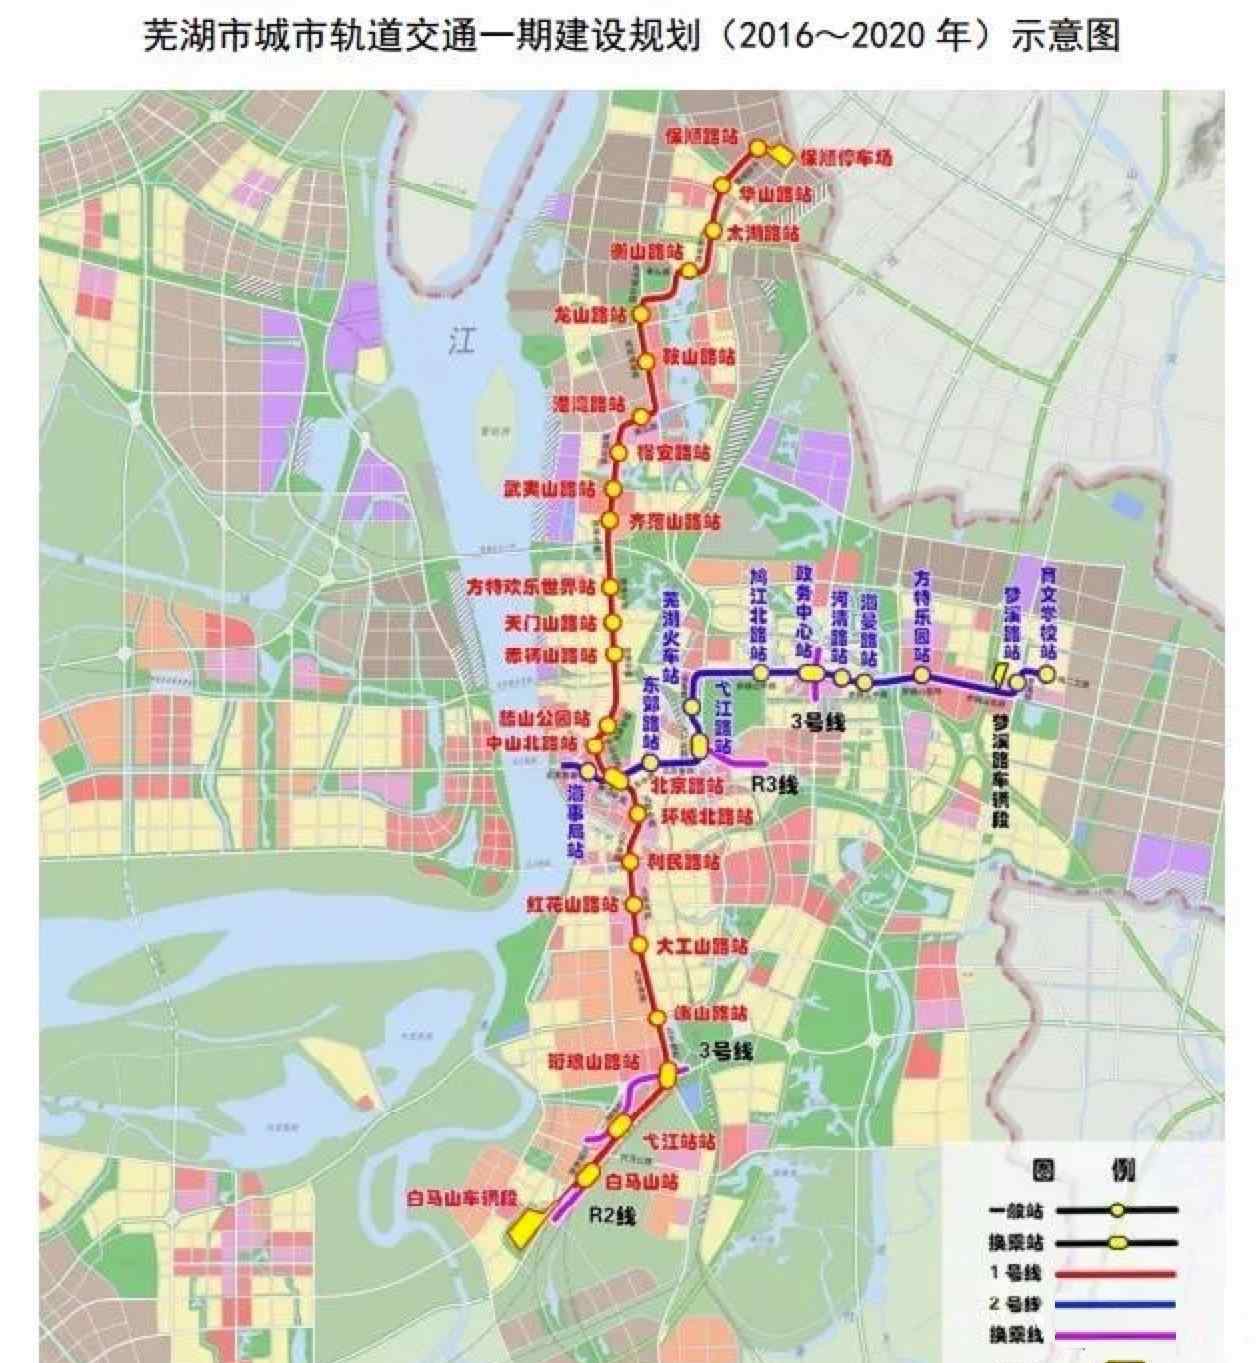 地铁速度 芜湖市轻轨网规划示意图，轻轨和地铁的区别速度谁快？